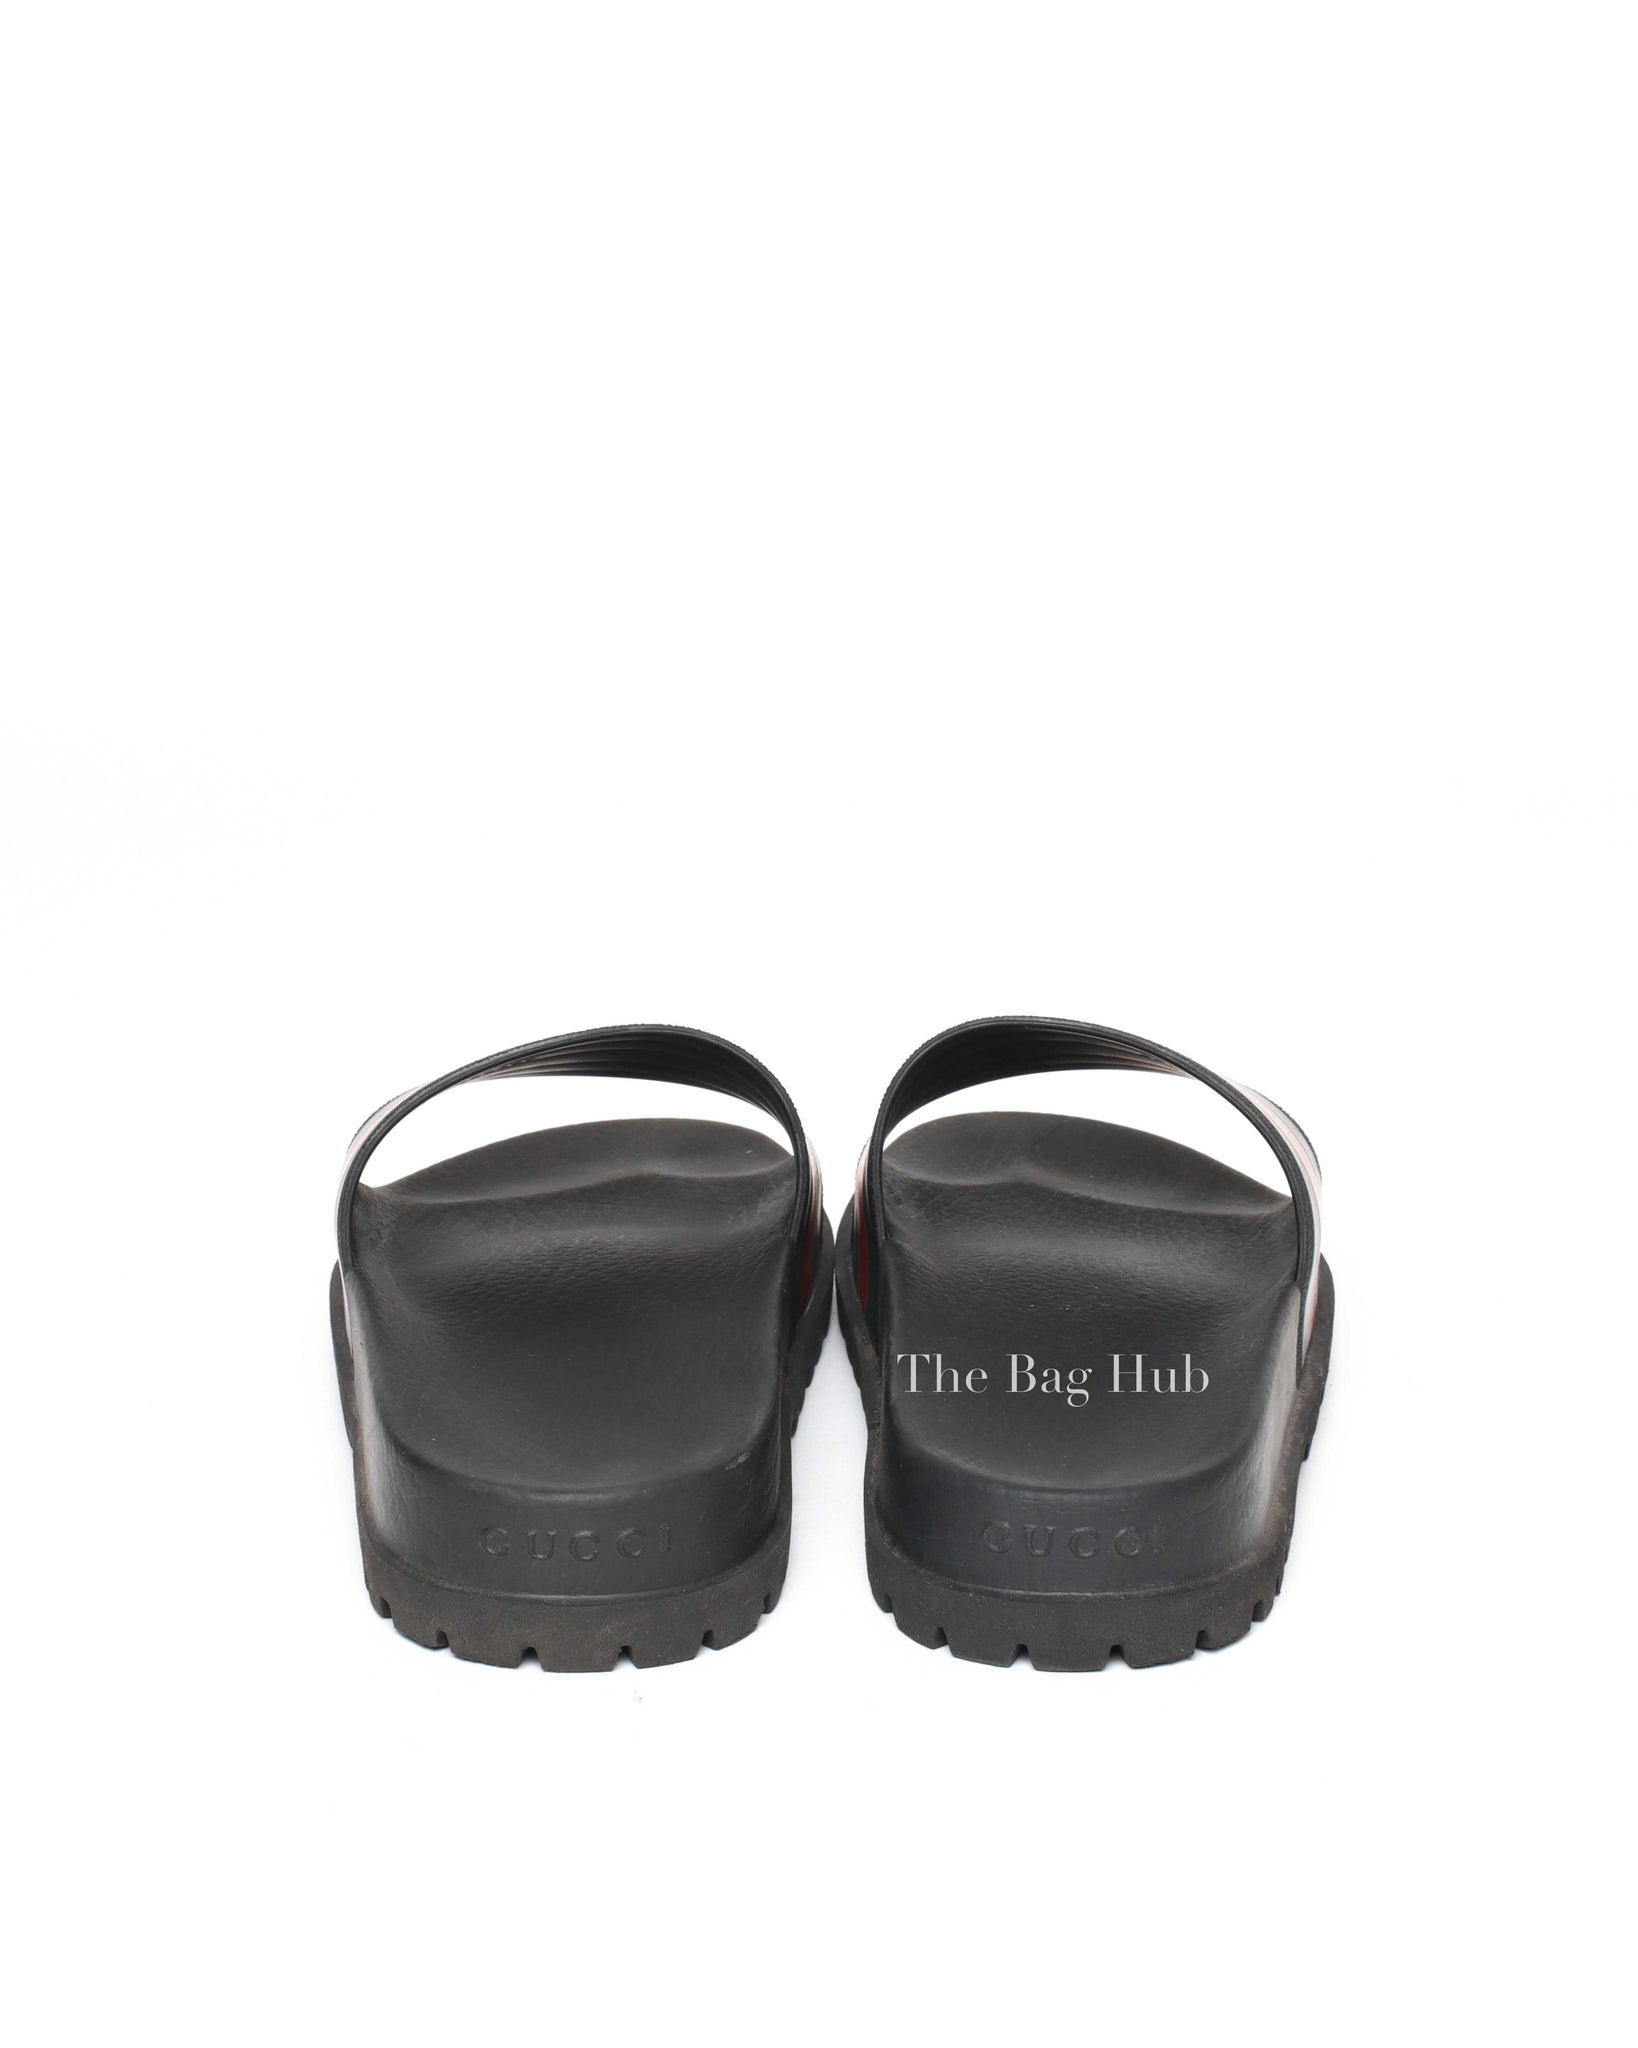 Gucci Black Web Accent Rubber Slide Sandals Size 7-6